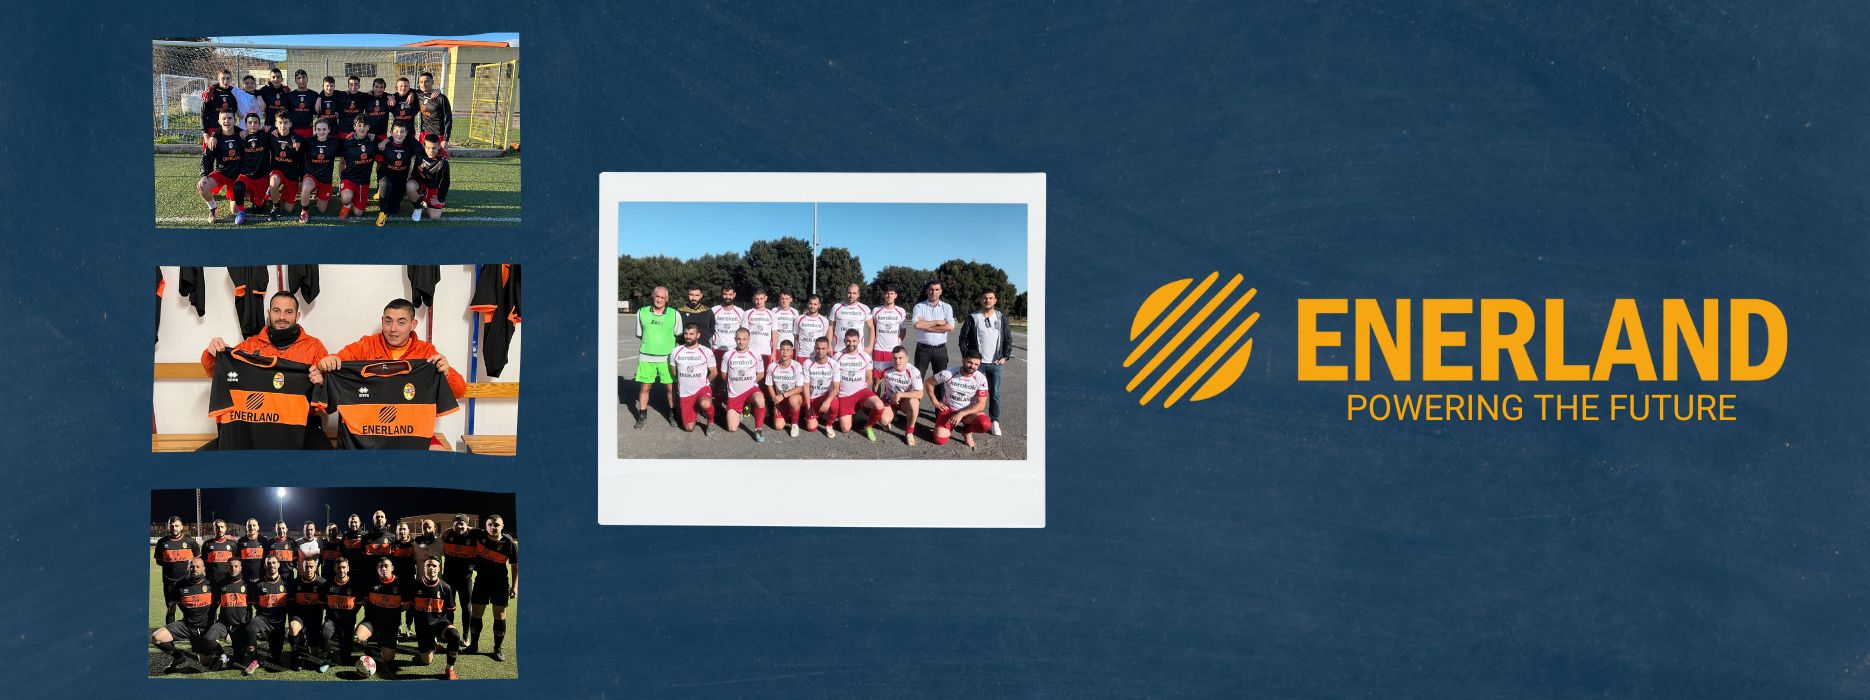 Enerland se compromete con el deporte y patrocina dos equipos de fútbol en Cerdeña